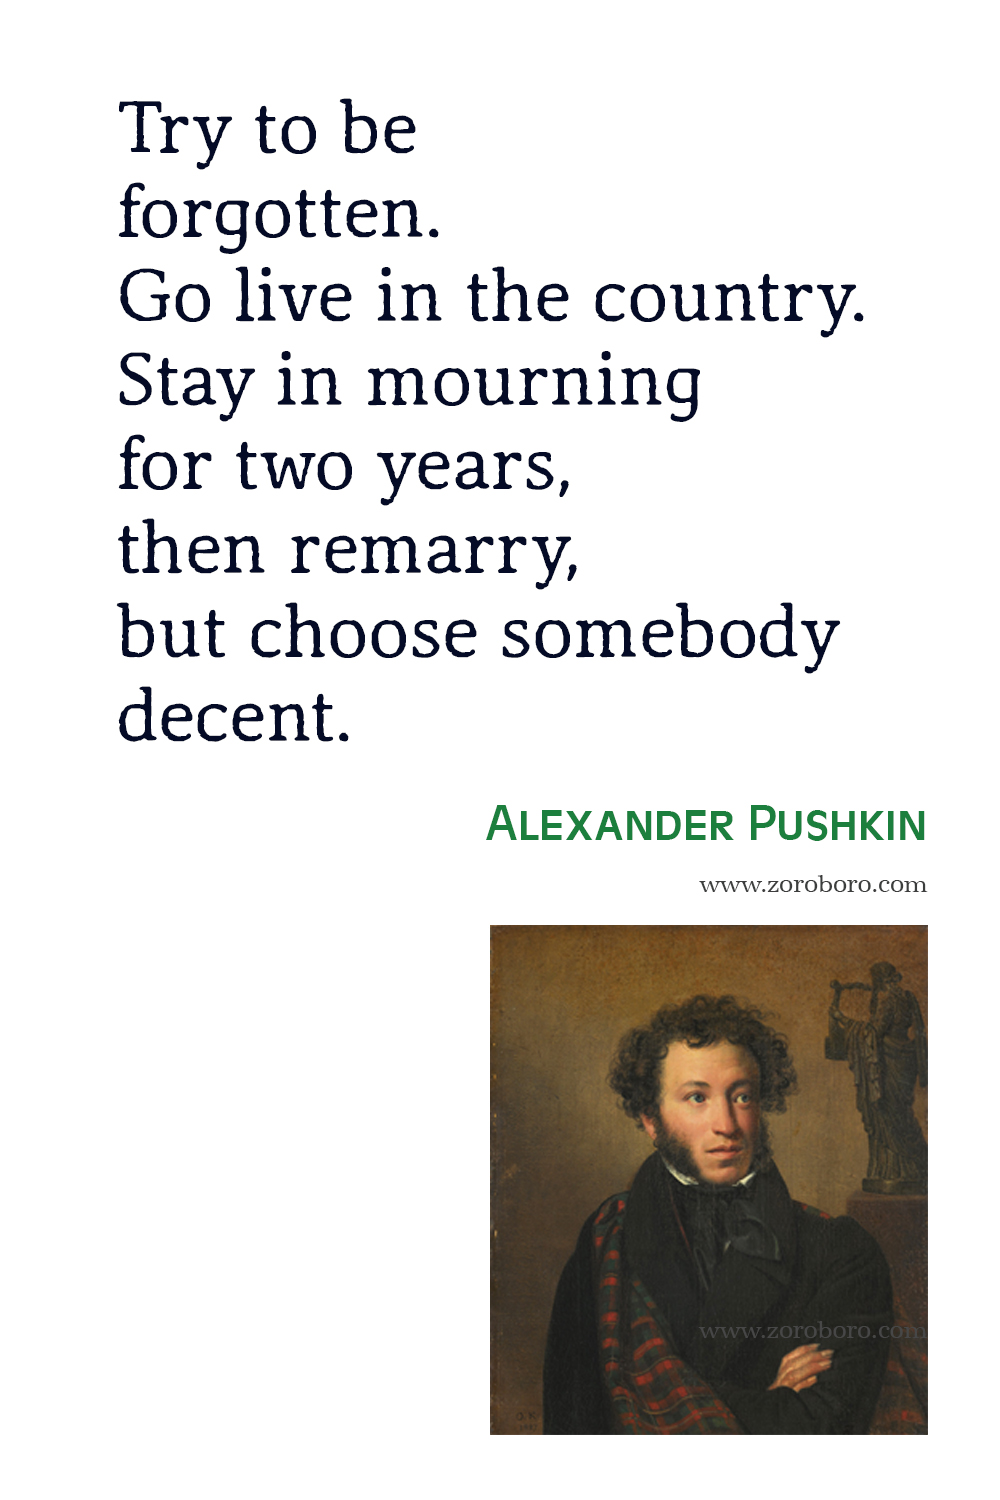 Alexander Pushkin Quotes, Eugene Onegin, Alexander Pushkin Poems, Alexander Pushkin Poetry, I loved You, Alexander Pushkin Books Quotes.